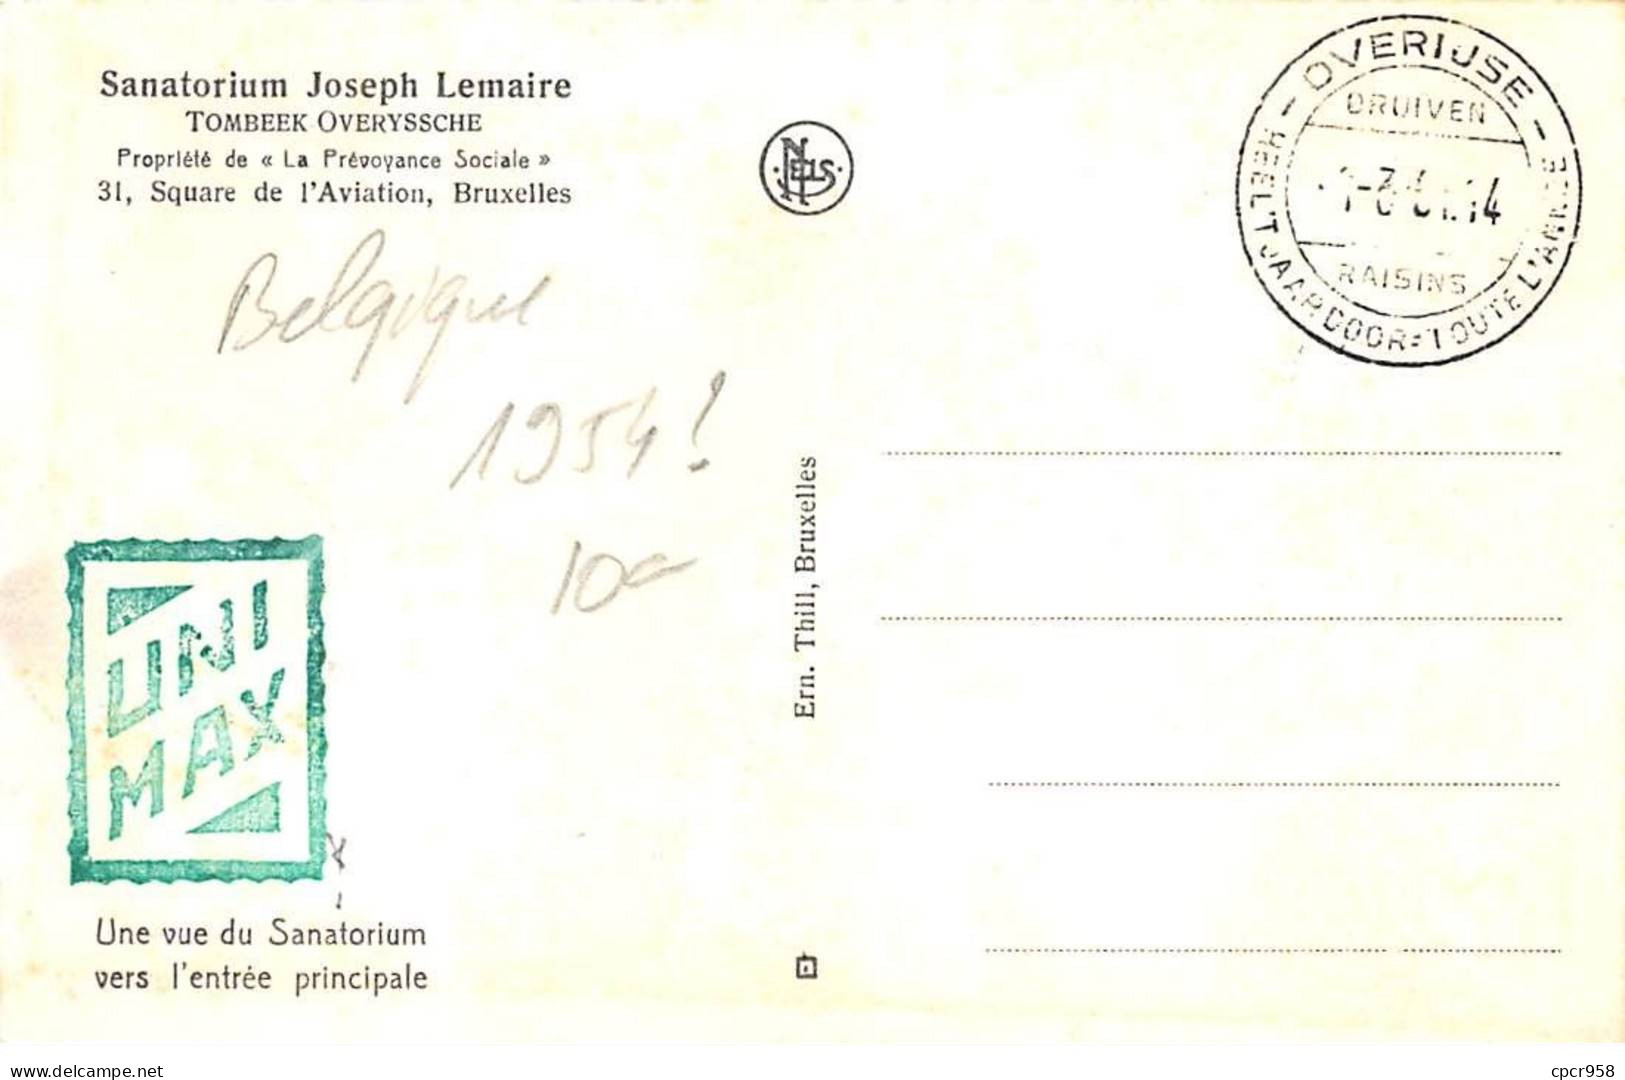 BELGIQUE.Carte Maximum.AM14093.1954.Cachet Overiuse.Vue Du Sanatorium Joseph Lemaire.Prévoyance Sociale - Gebruikt